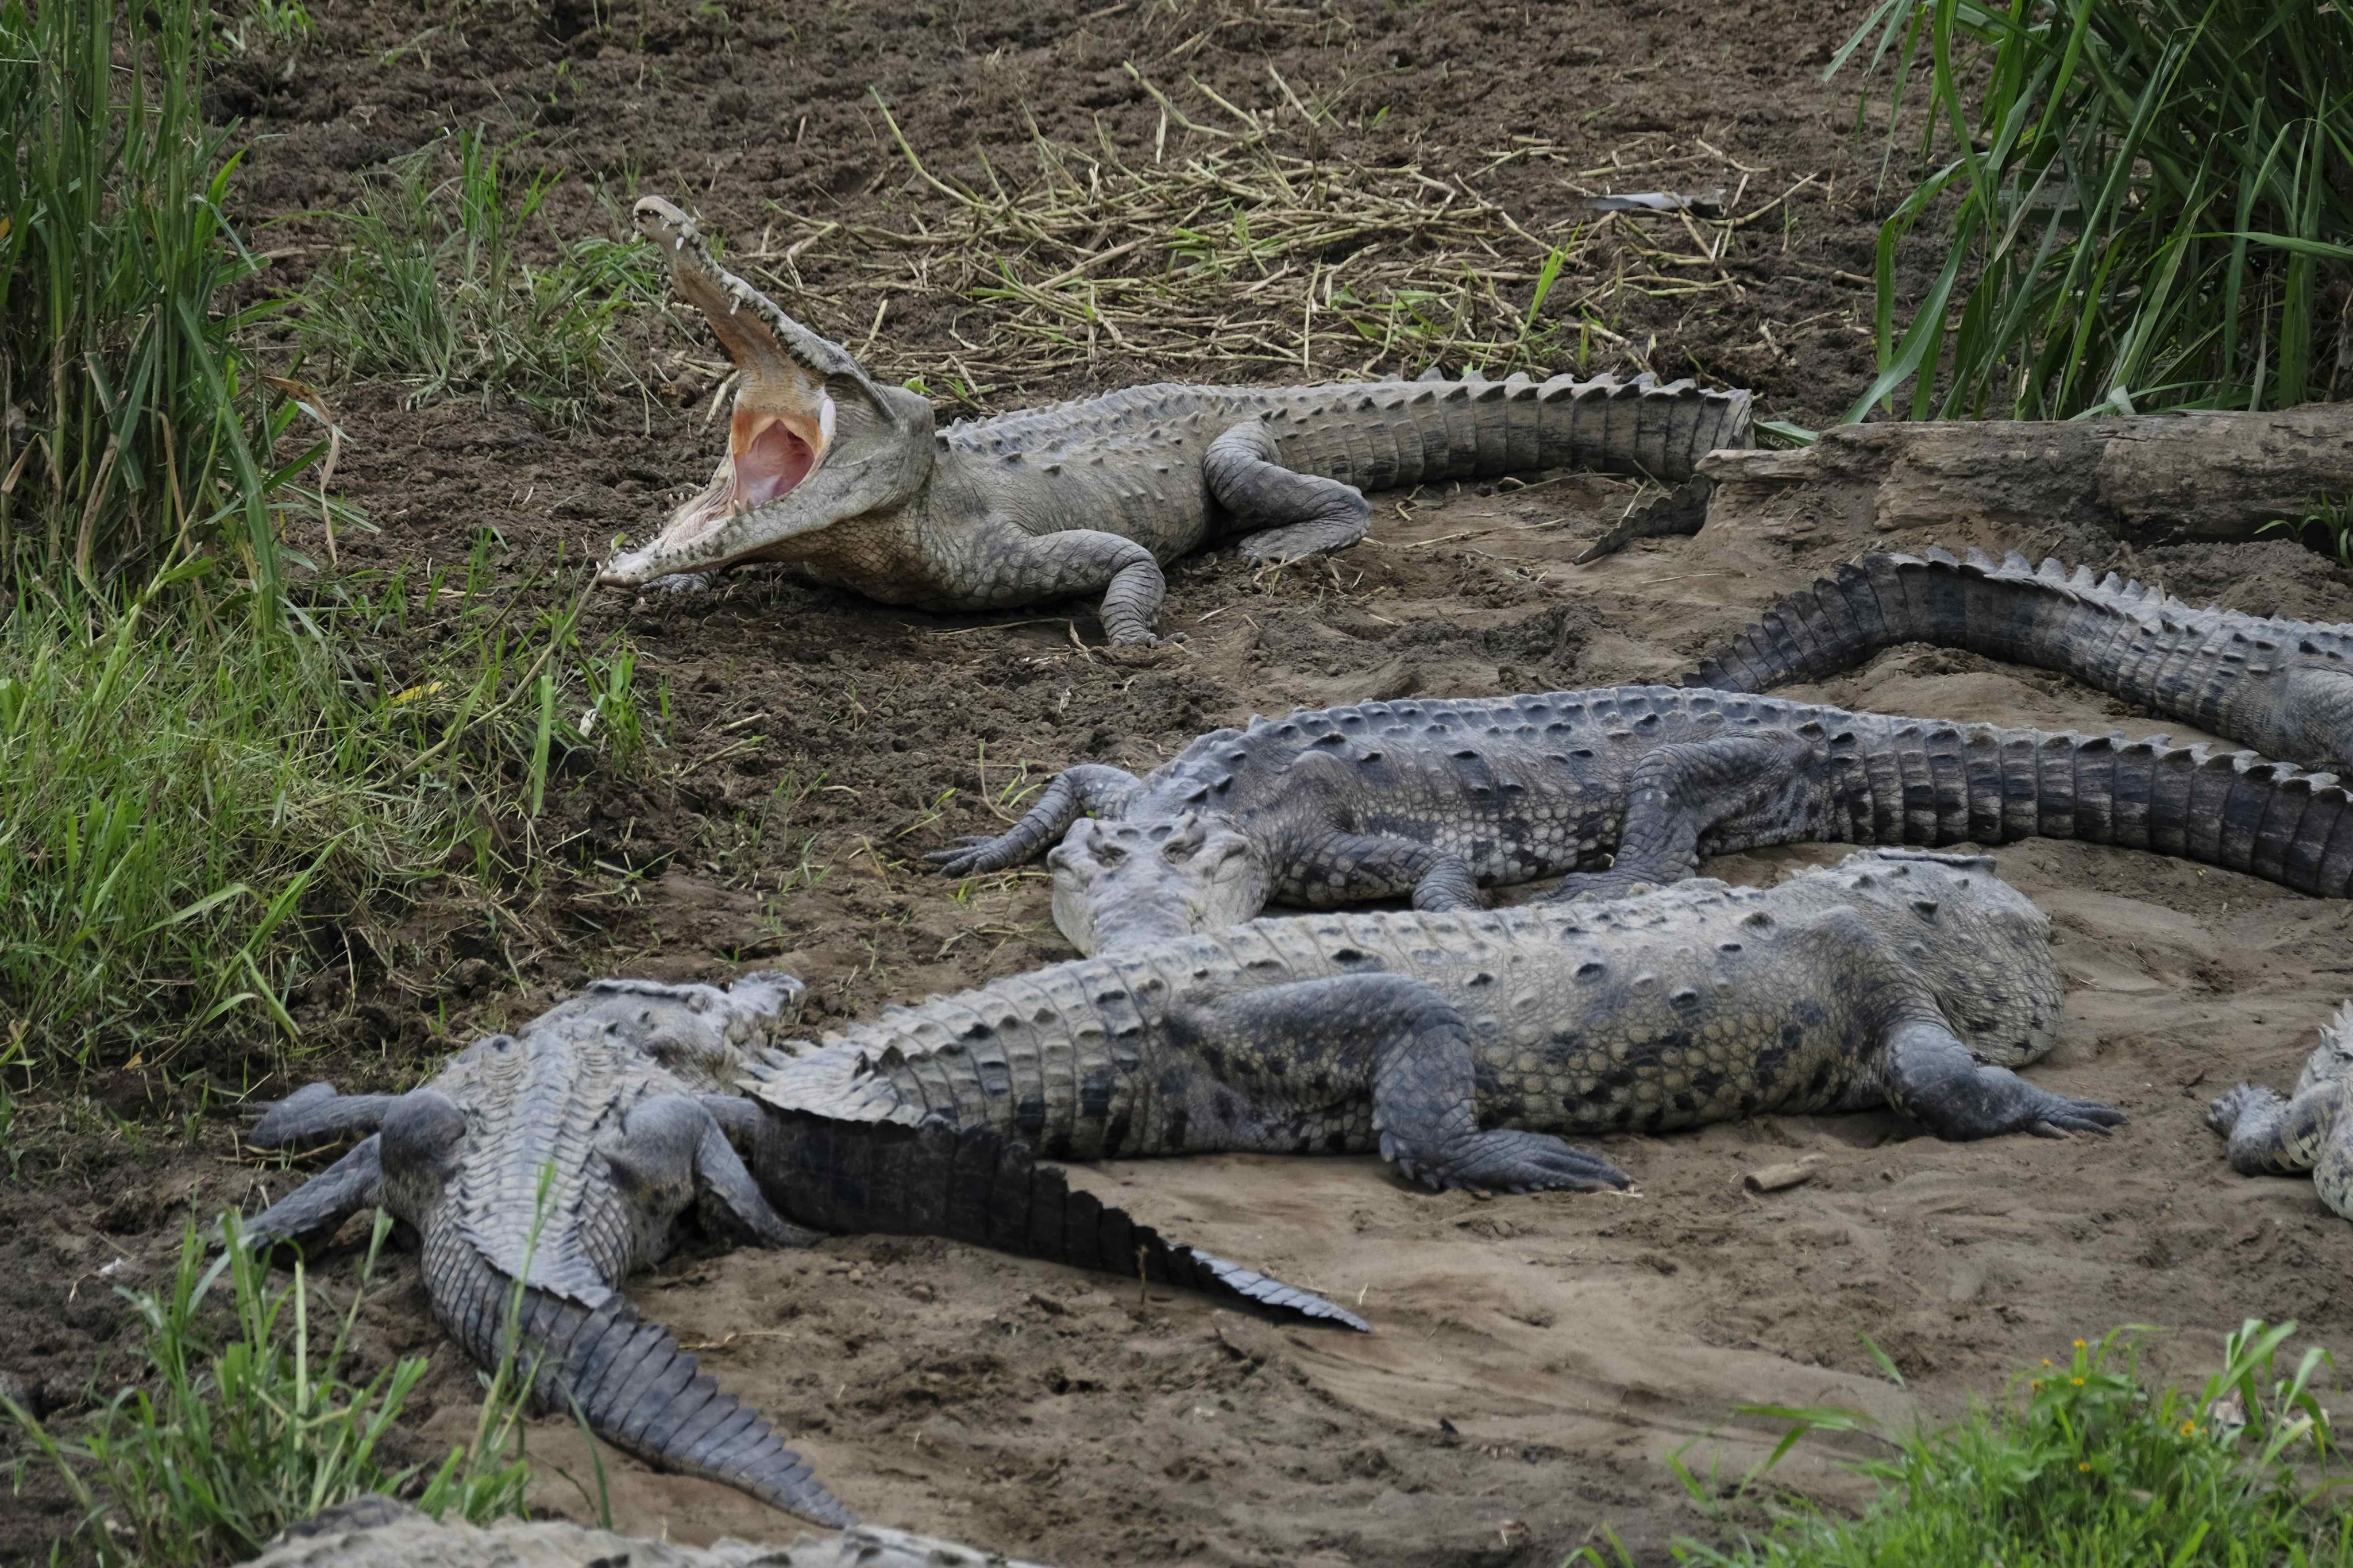 Preocupa el aumento de cocodrilos vistos fuera de su hábitat - Infobae